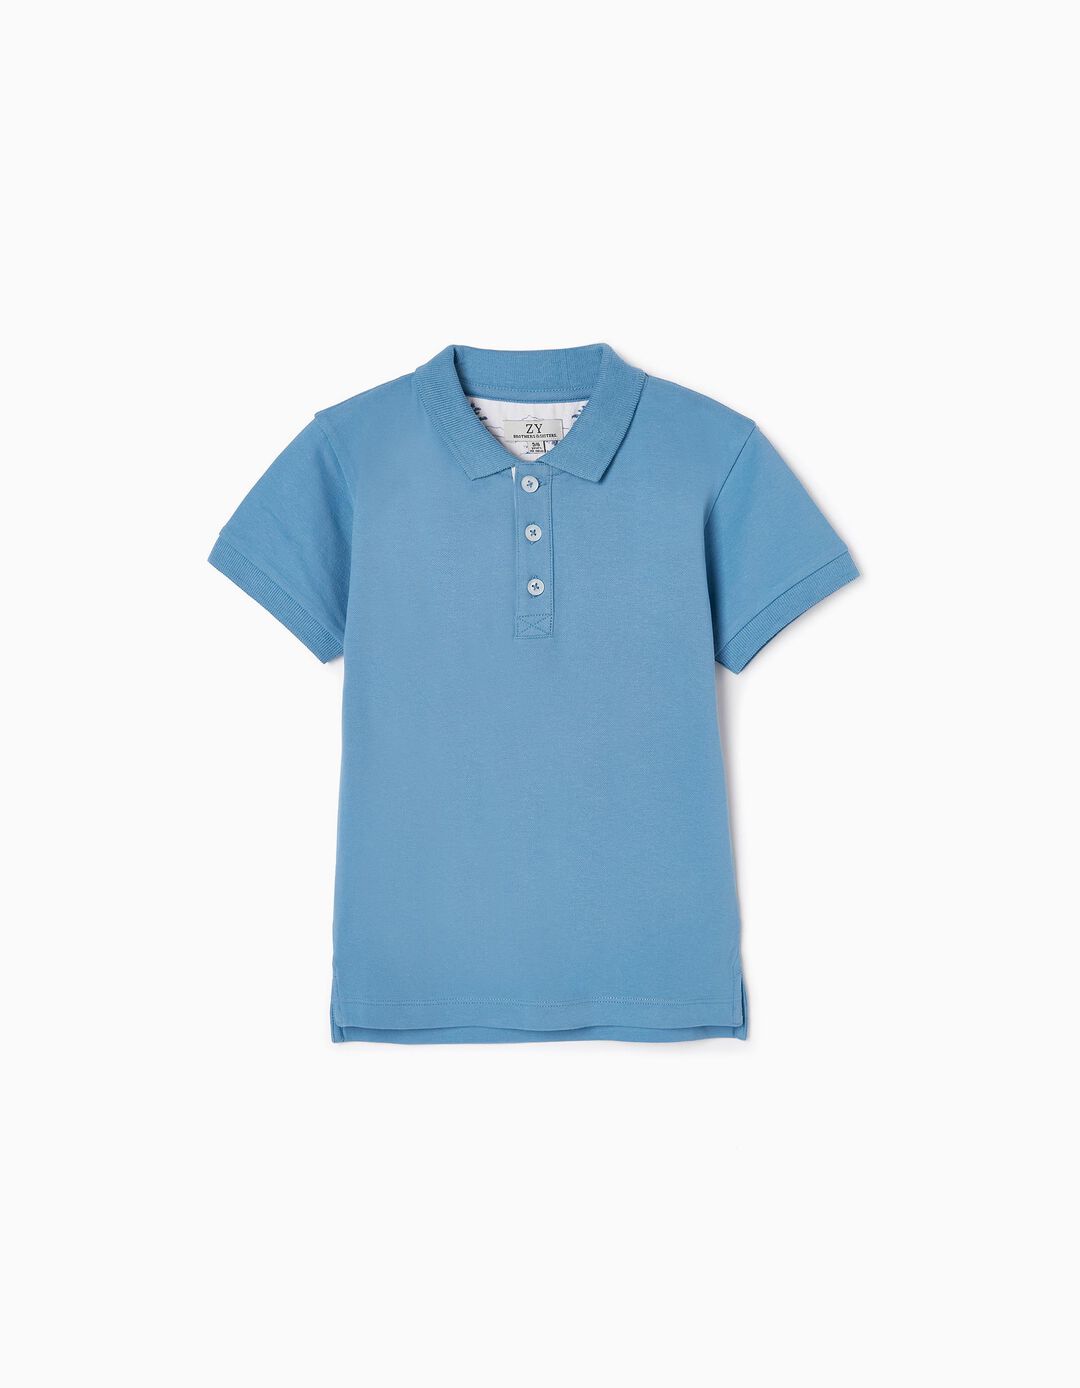 Cotton Piqué Polo Shirt for Boys 'You&Me', Blue